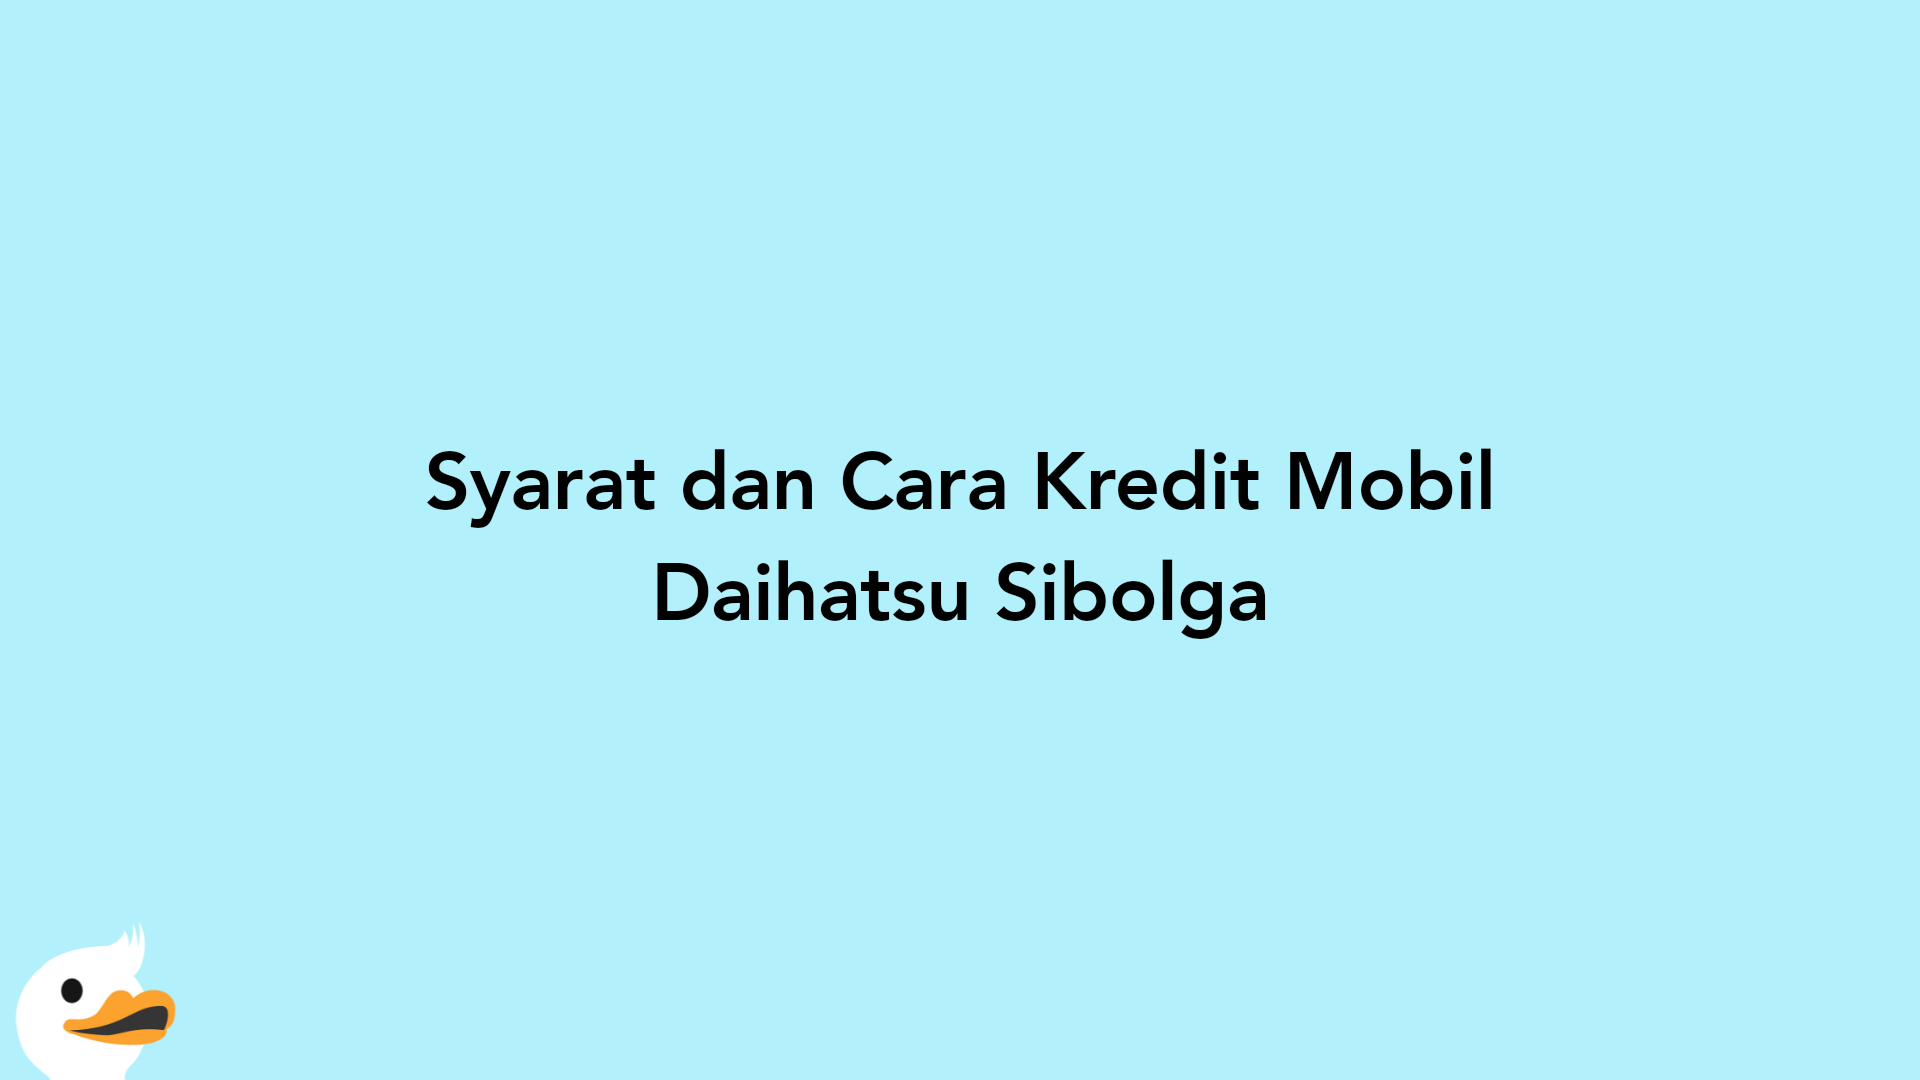 Syarat dan Cara Kredit Mobil Daihatsu Sibolga